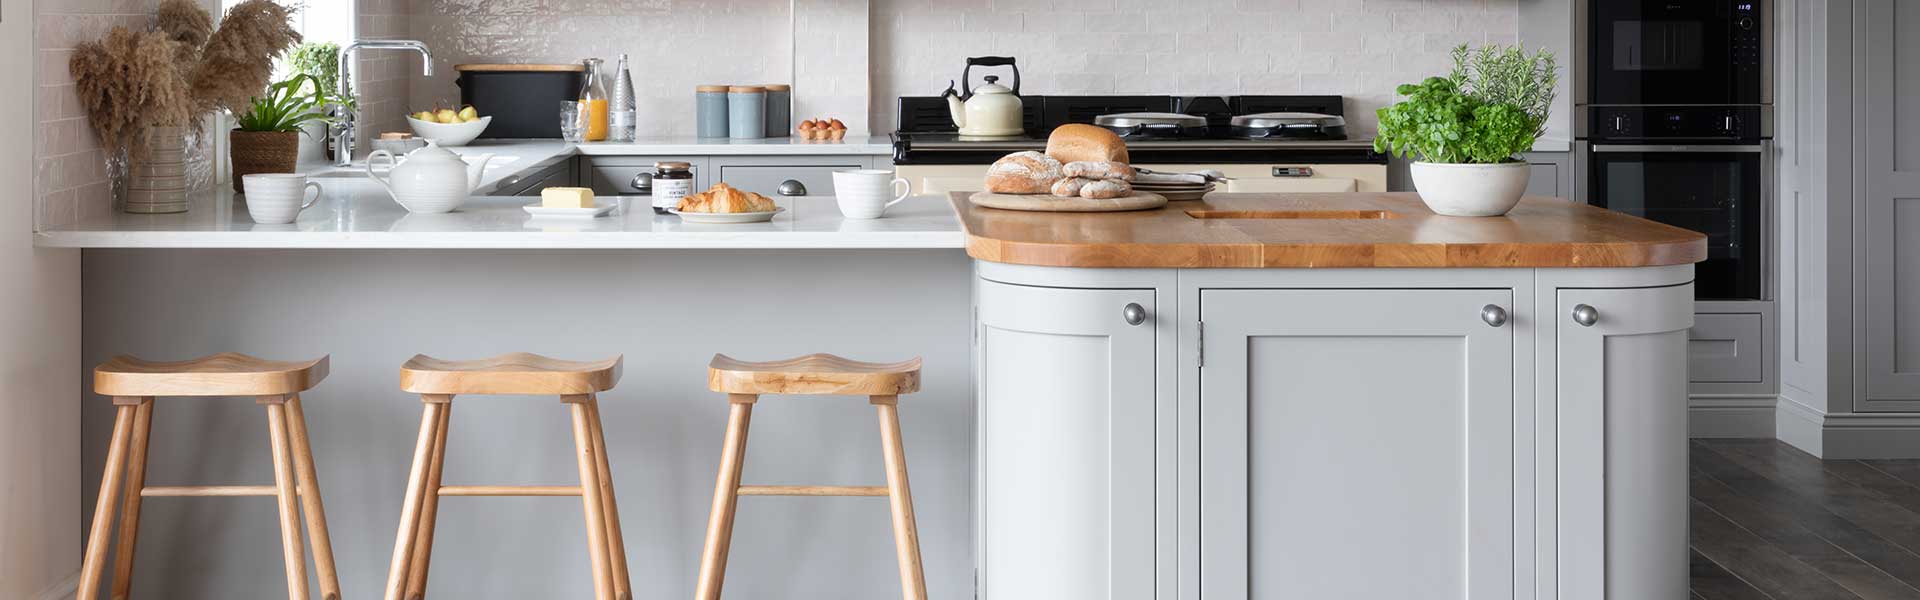 TikTok kitchen trends: 5 most popular home decor hashtags - Goodhomes  Magazine : Goodhomes Magazine